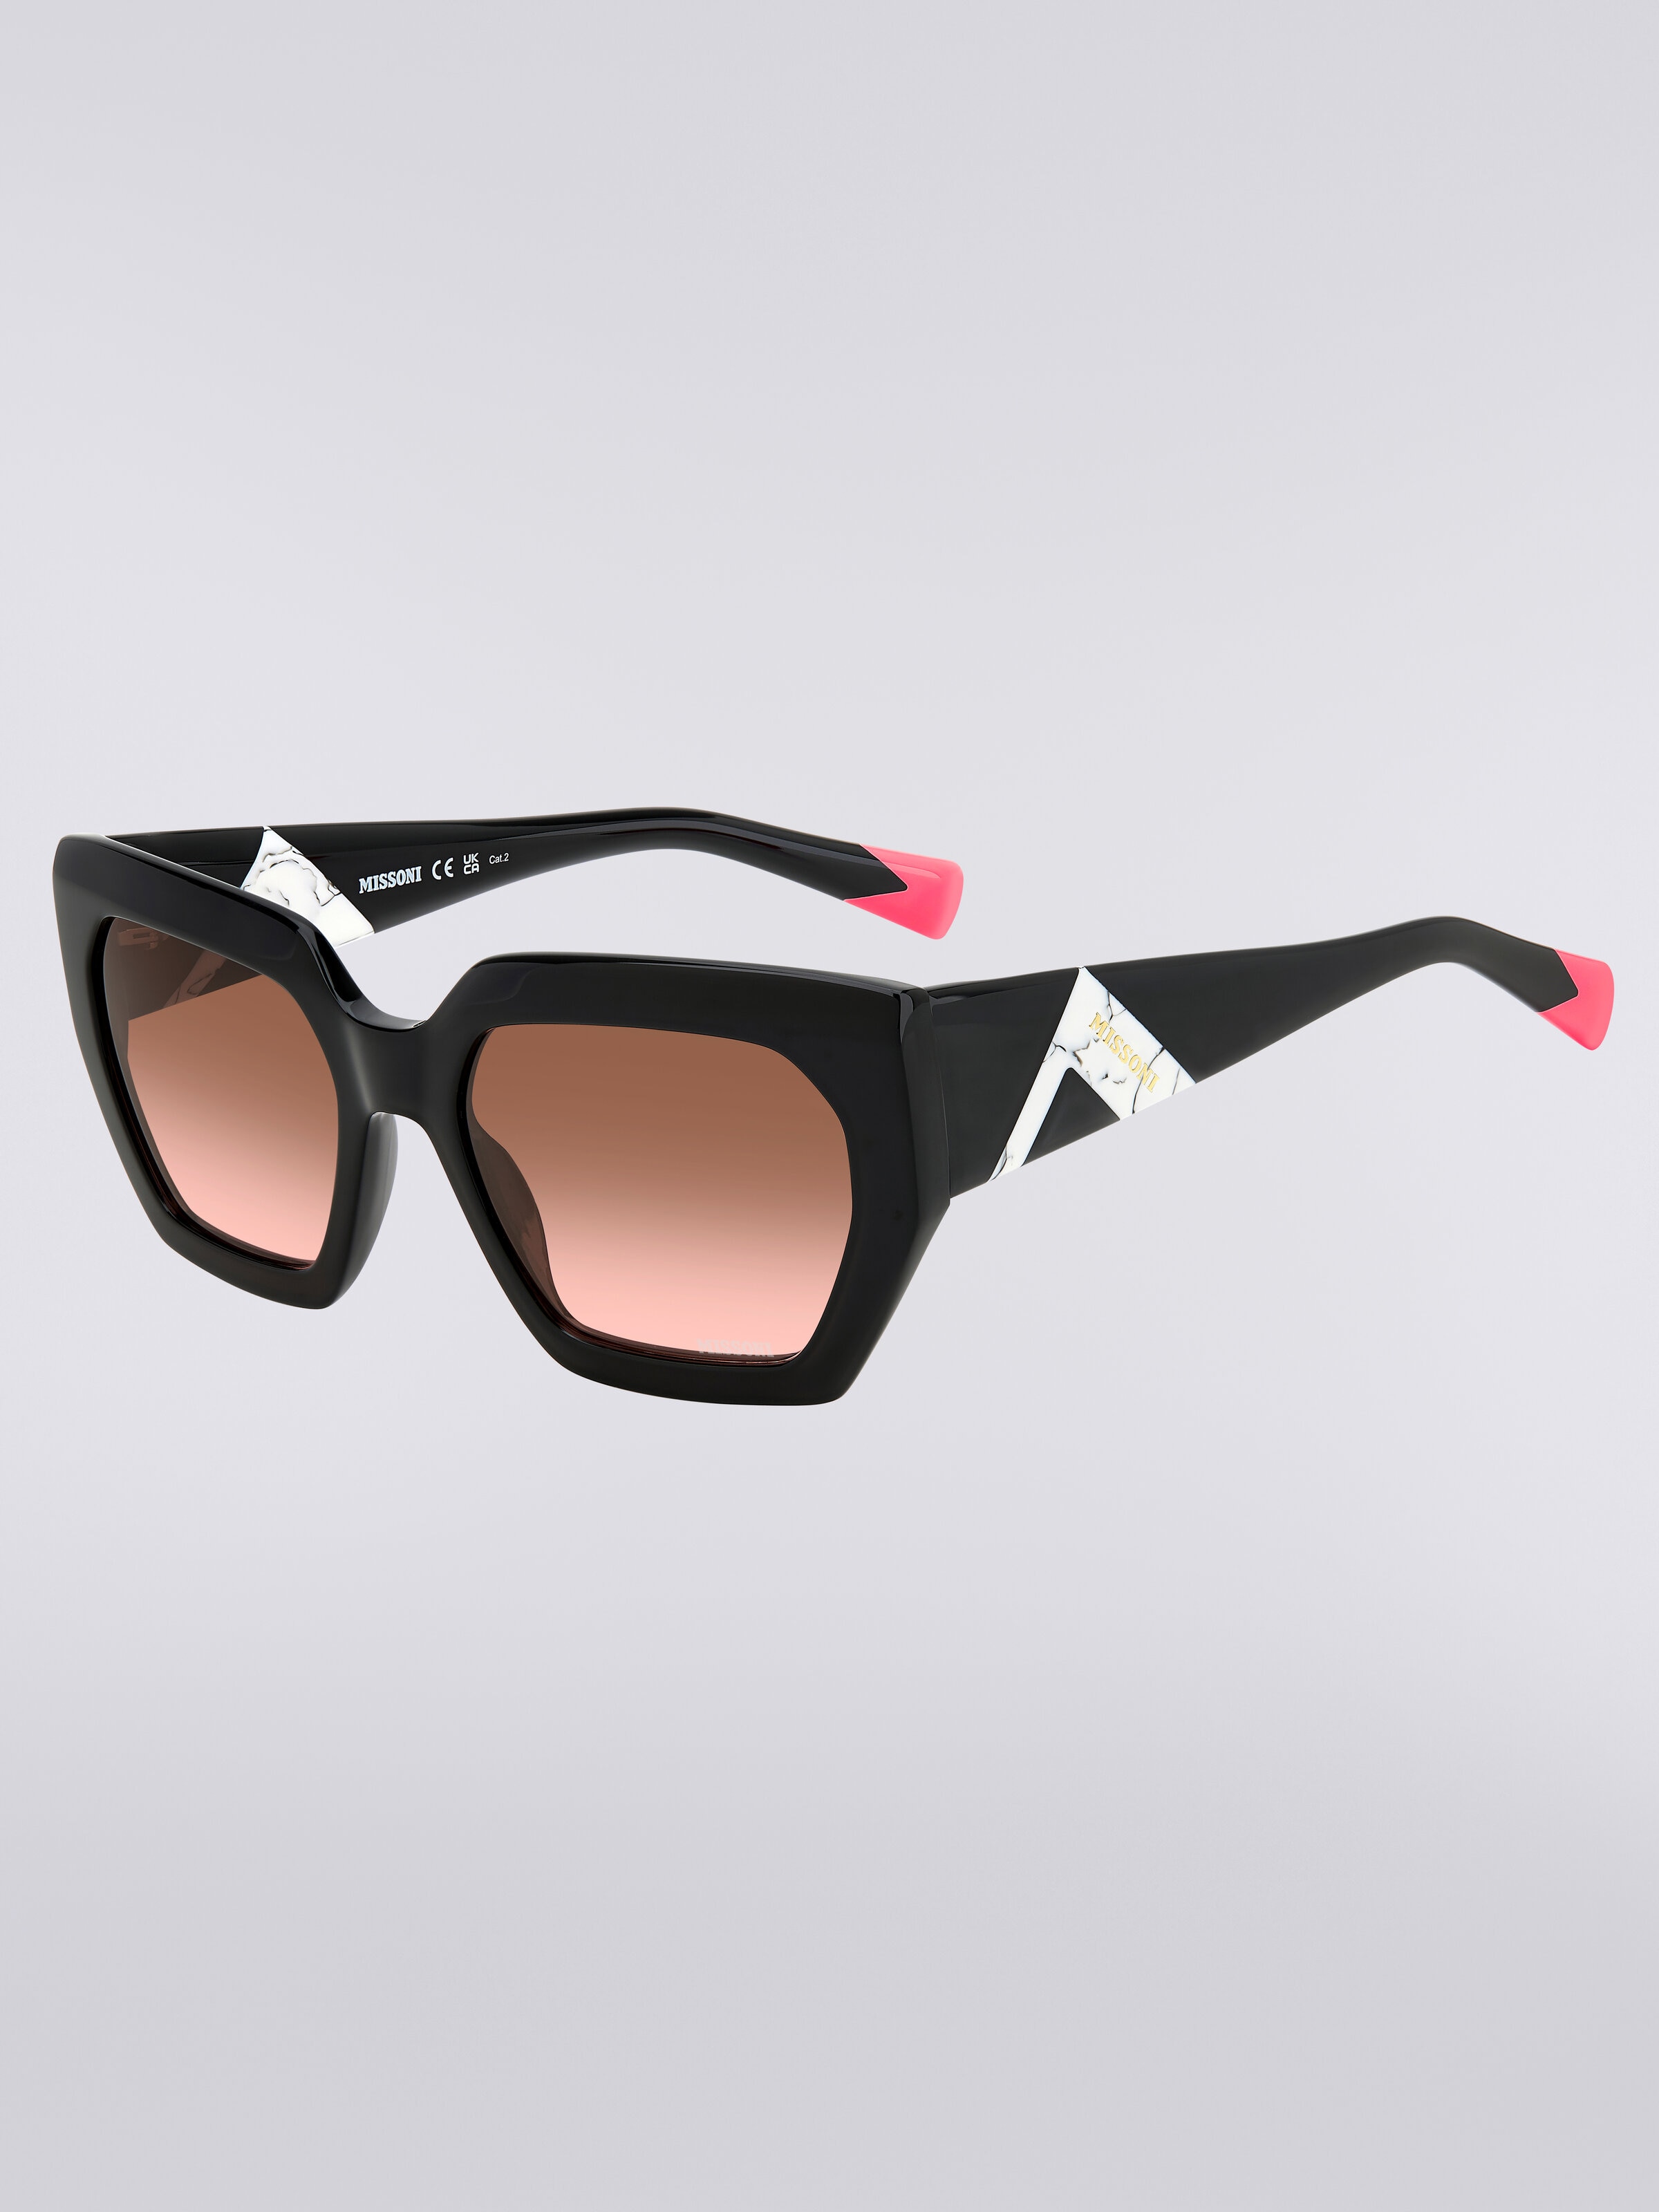 Sonnenbrille mit quadratischer Fassung, kontrastierendem Einsatz und Logo, Mehrfarbig  - 1